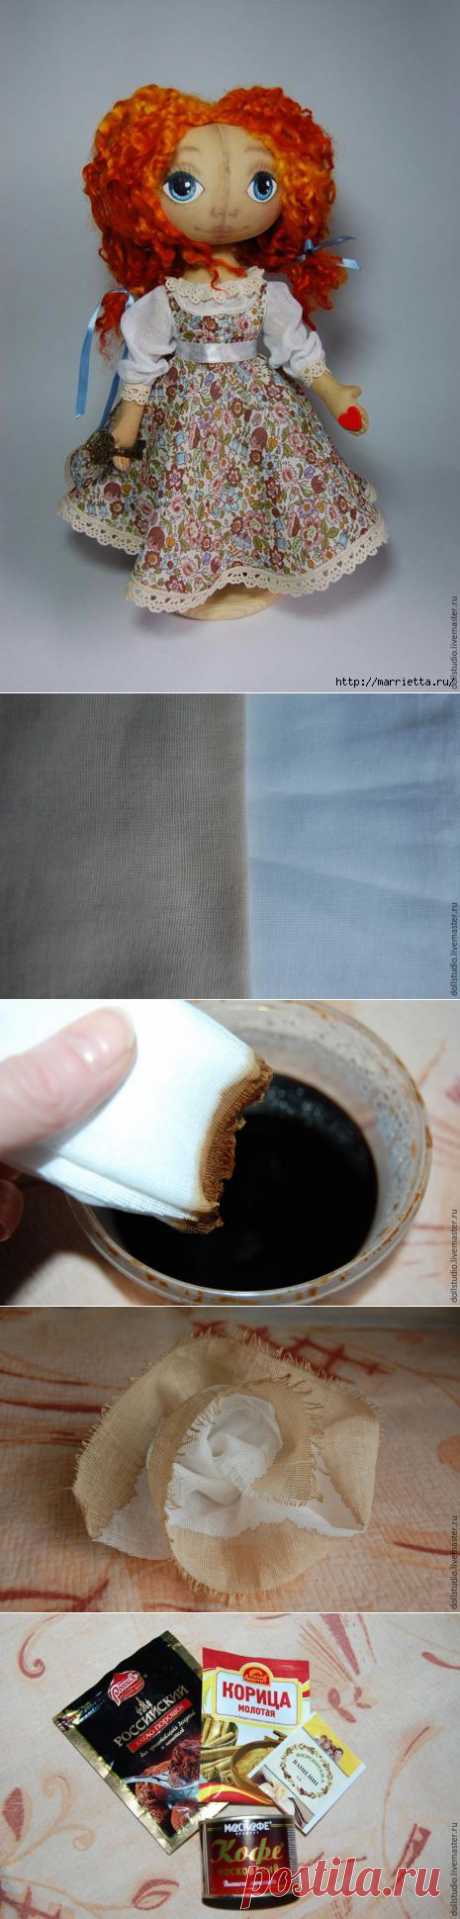 Способы тонирования ткани при помощи кофе для пошива игрушек